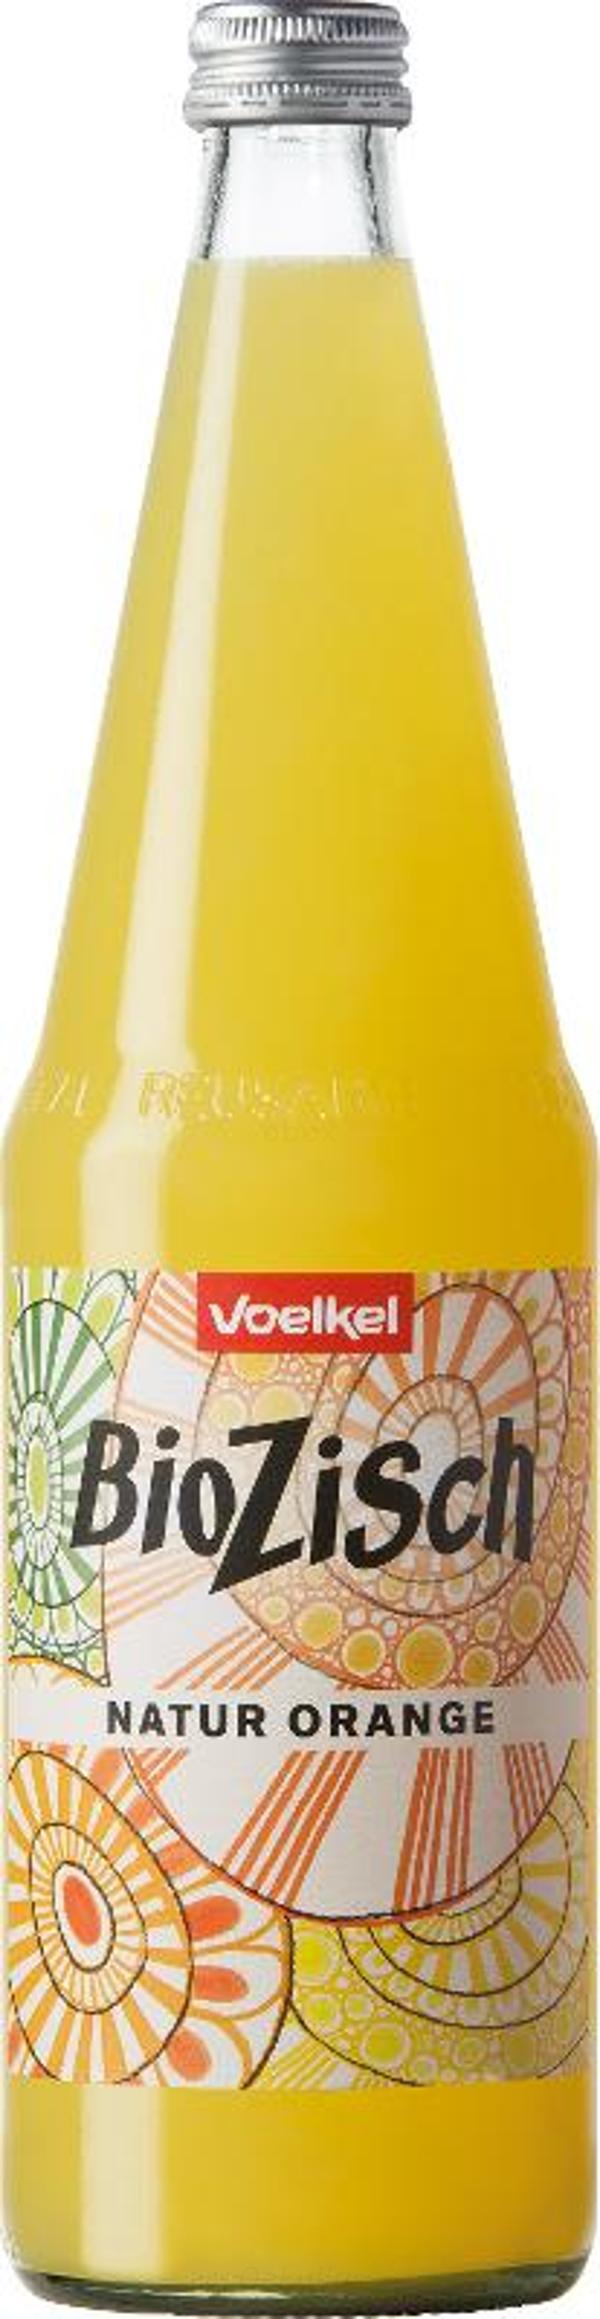 Produktfoto zu Orangen Zisch Flasche